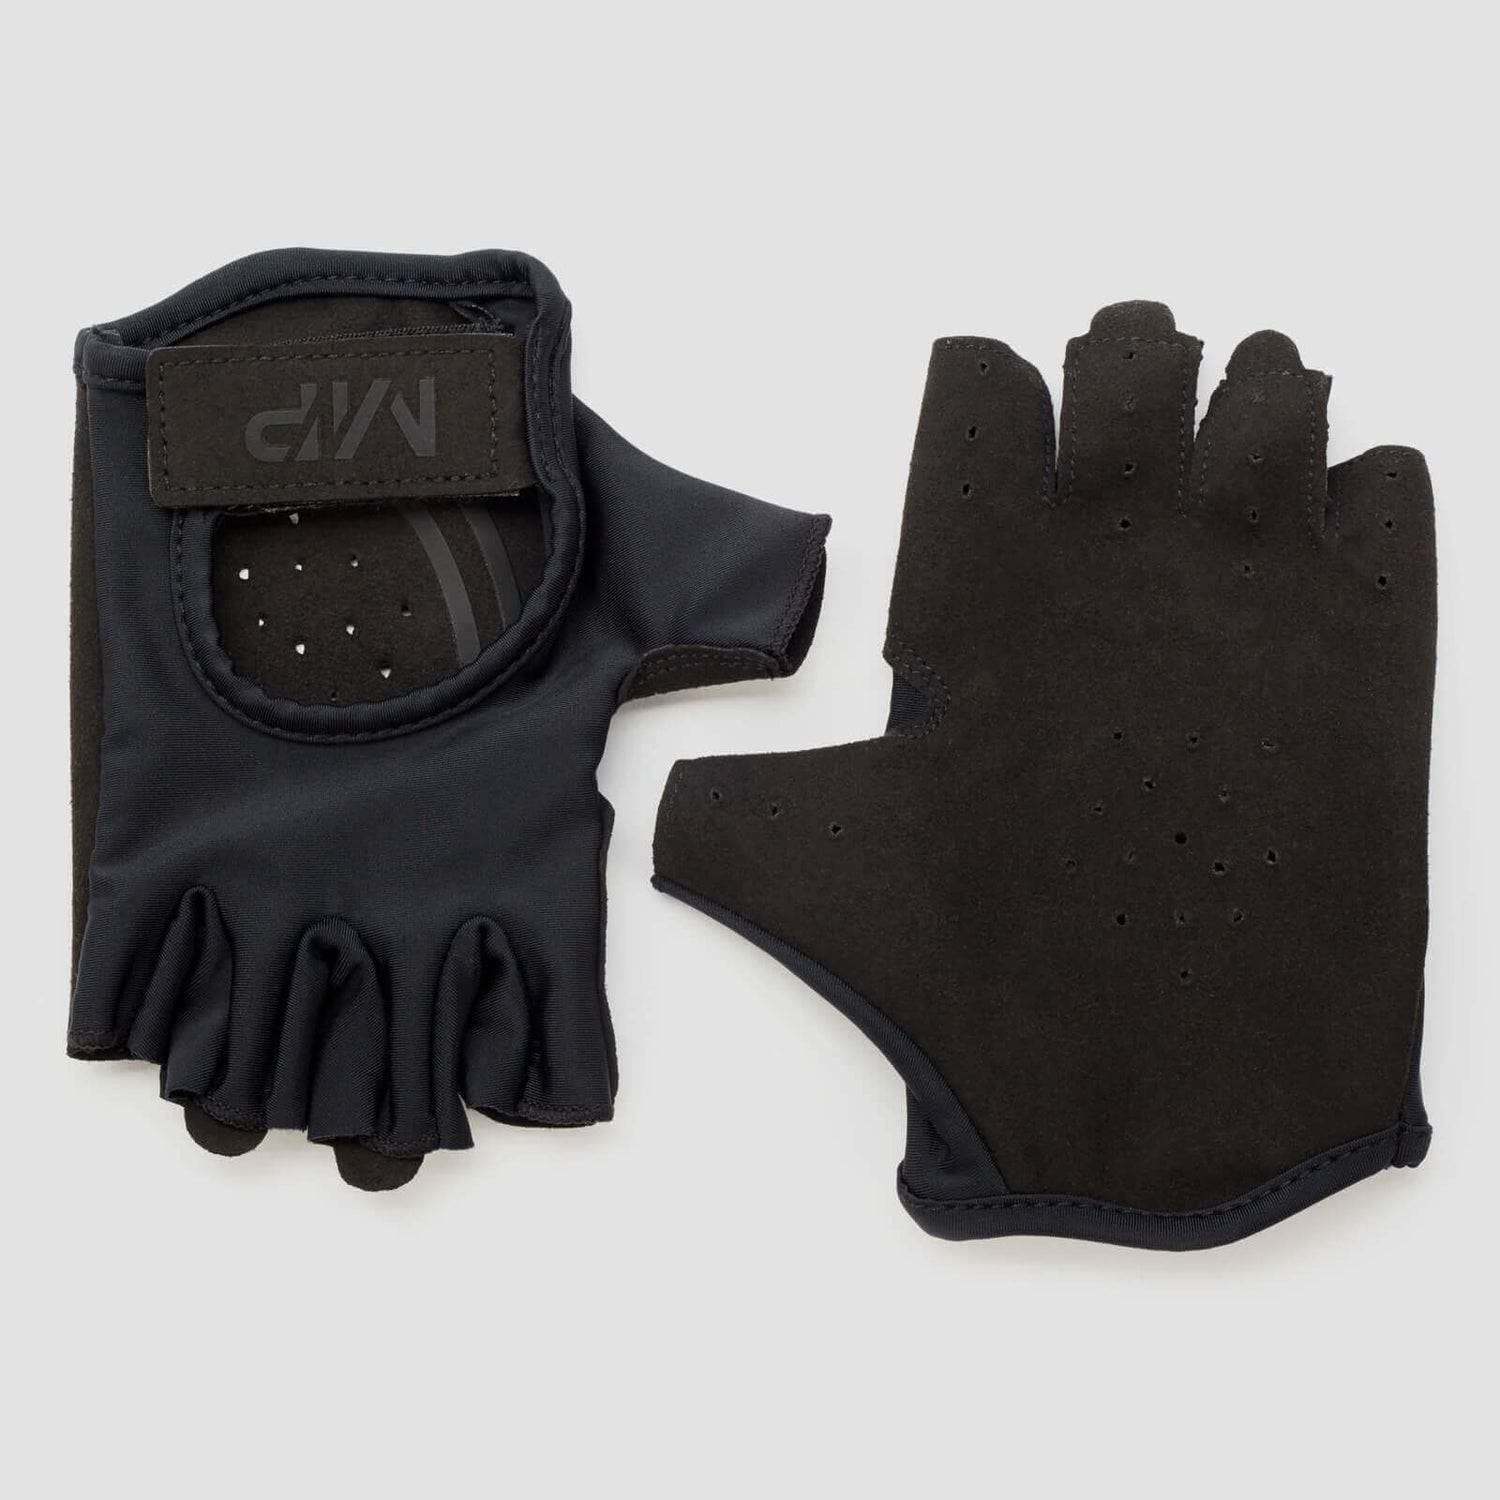 Mănuși pentru ridicat greutăți MP pentru bărbați - Negru - M